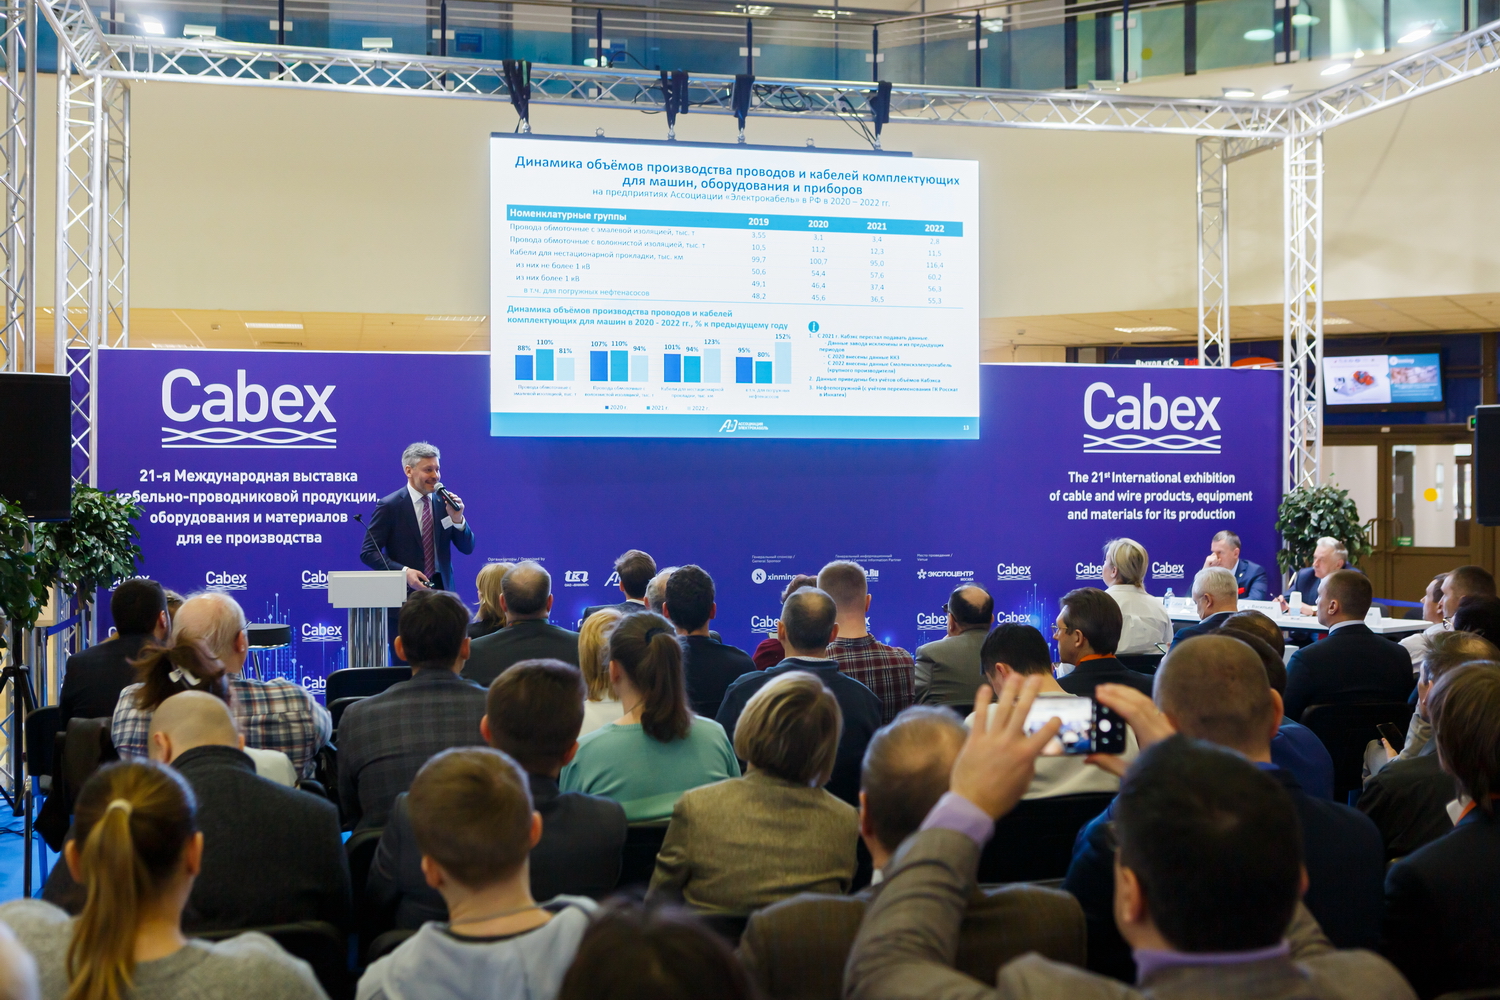 Сформирована деловая программа выставки Cabex 2024  C 19 по 21 марта в Москве пройдет 22-я Международная выставка кабельно-проводниковой продукции, оборудования и материалов для ее производства Cabex.  Выставка Cabex — ключевое деловое мероприятие отечест